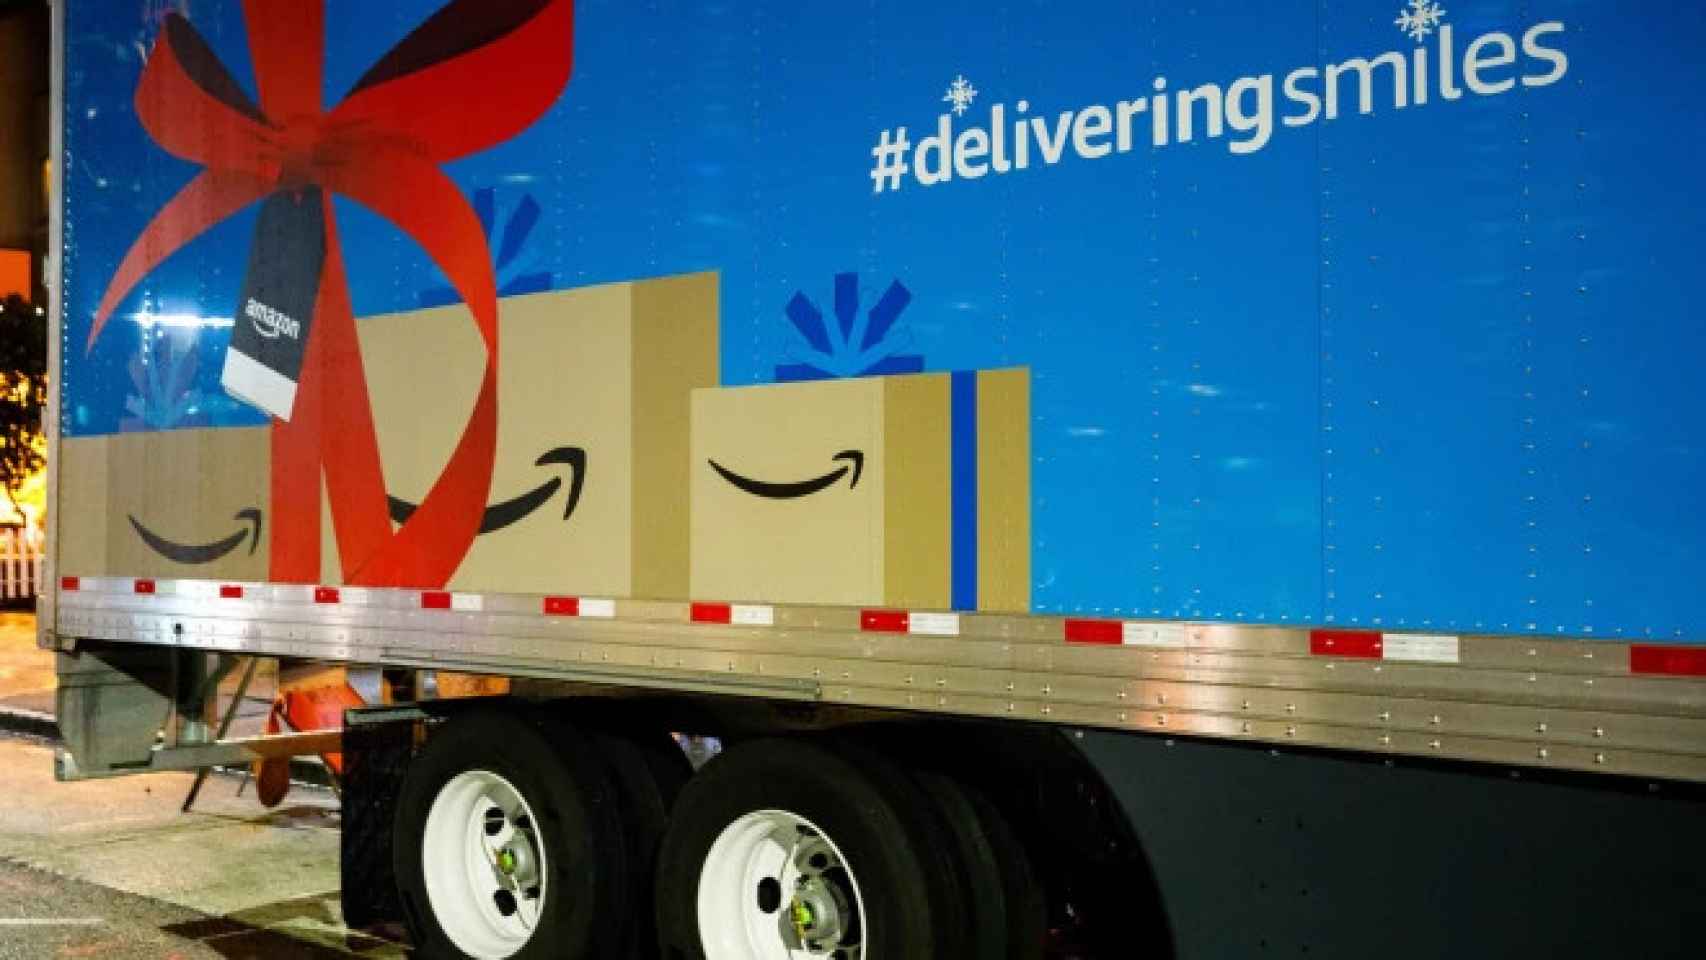 Delivering Smiles, campaña benéfica de Amazon